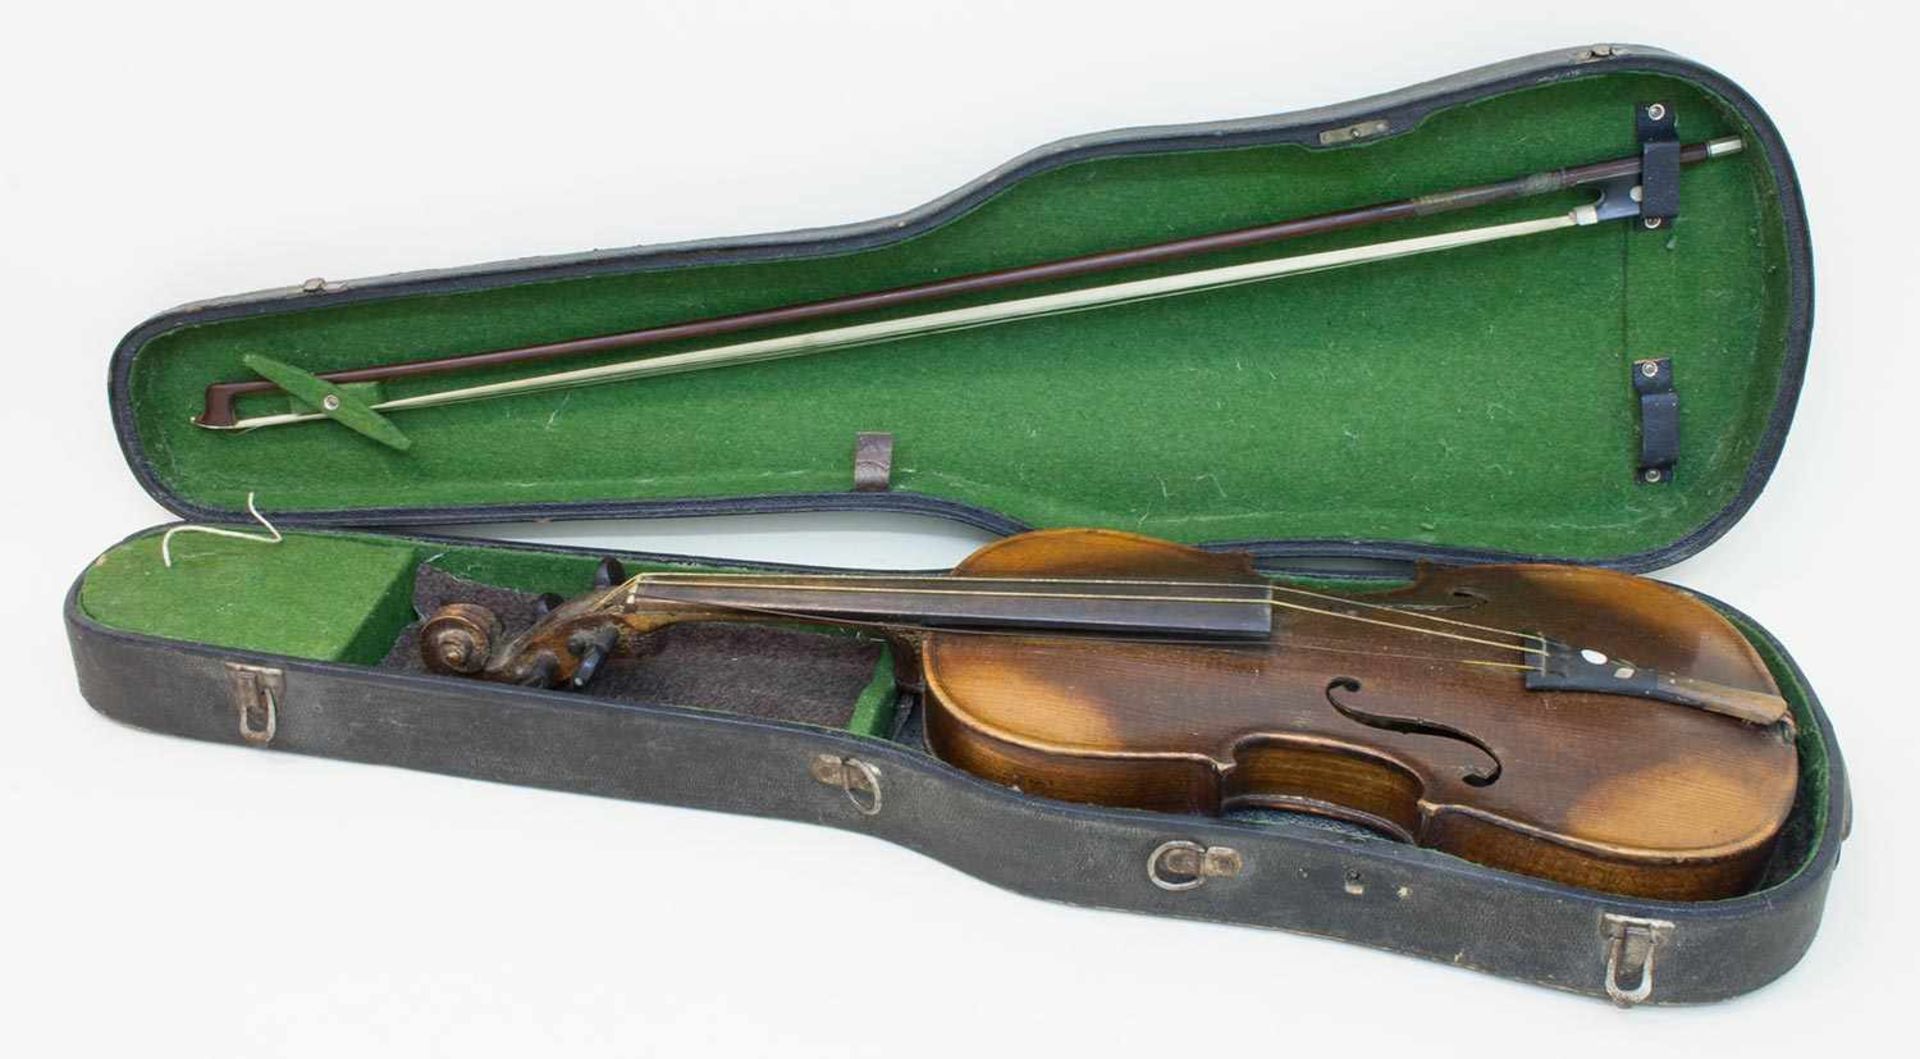 Violine um 1900, Copy of Stradivari - Made in Germany (alter Klebezettel), Ahornboden, mit Bogen und